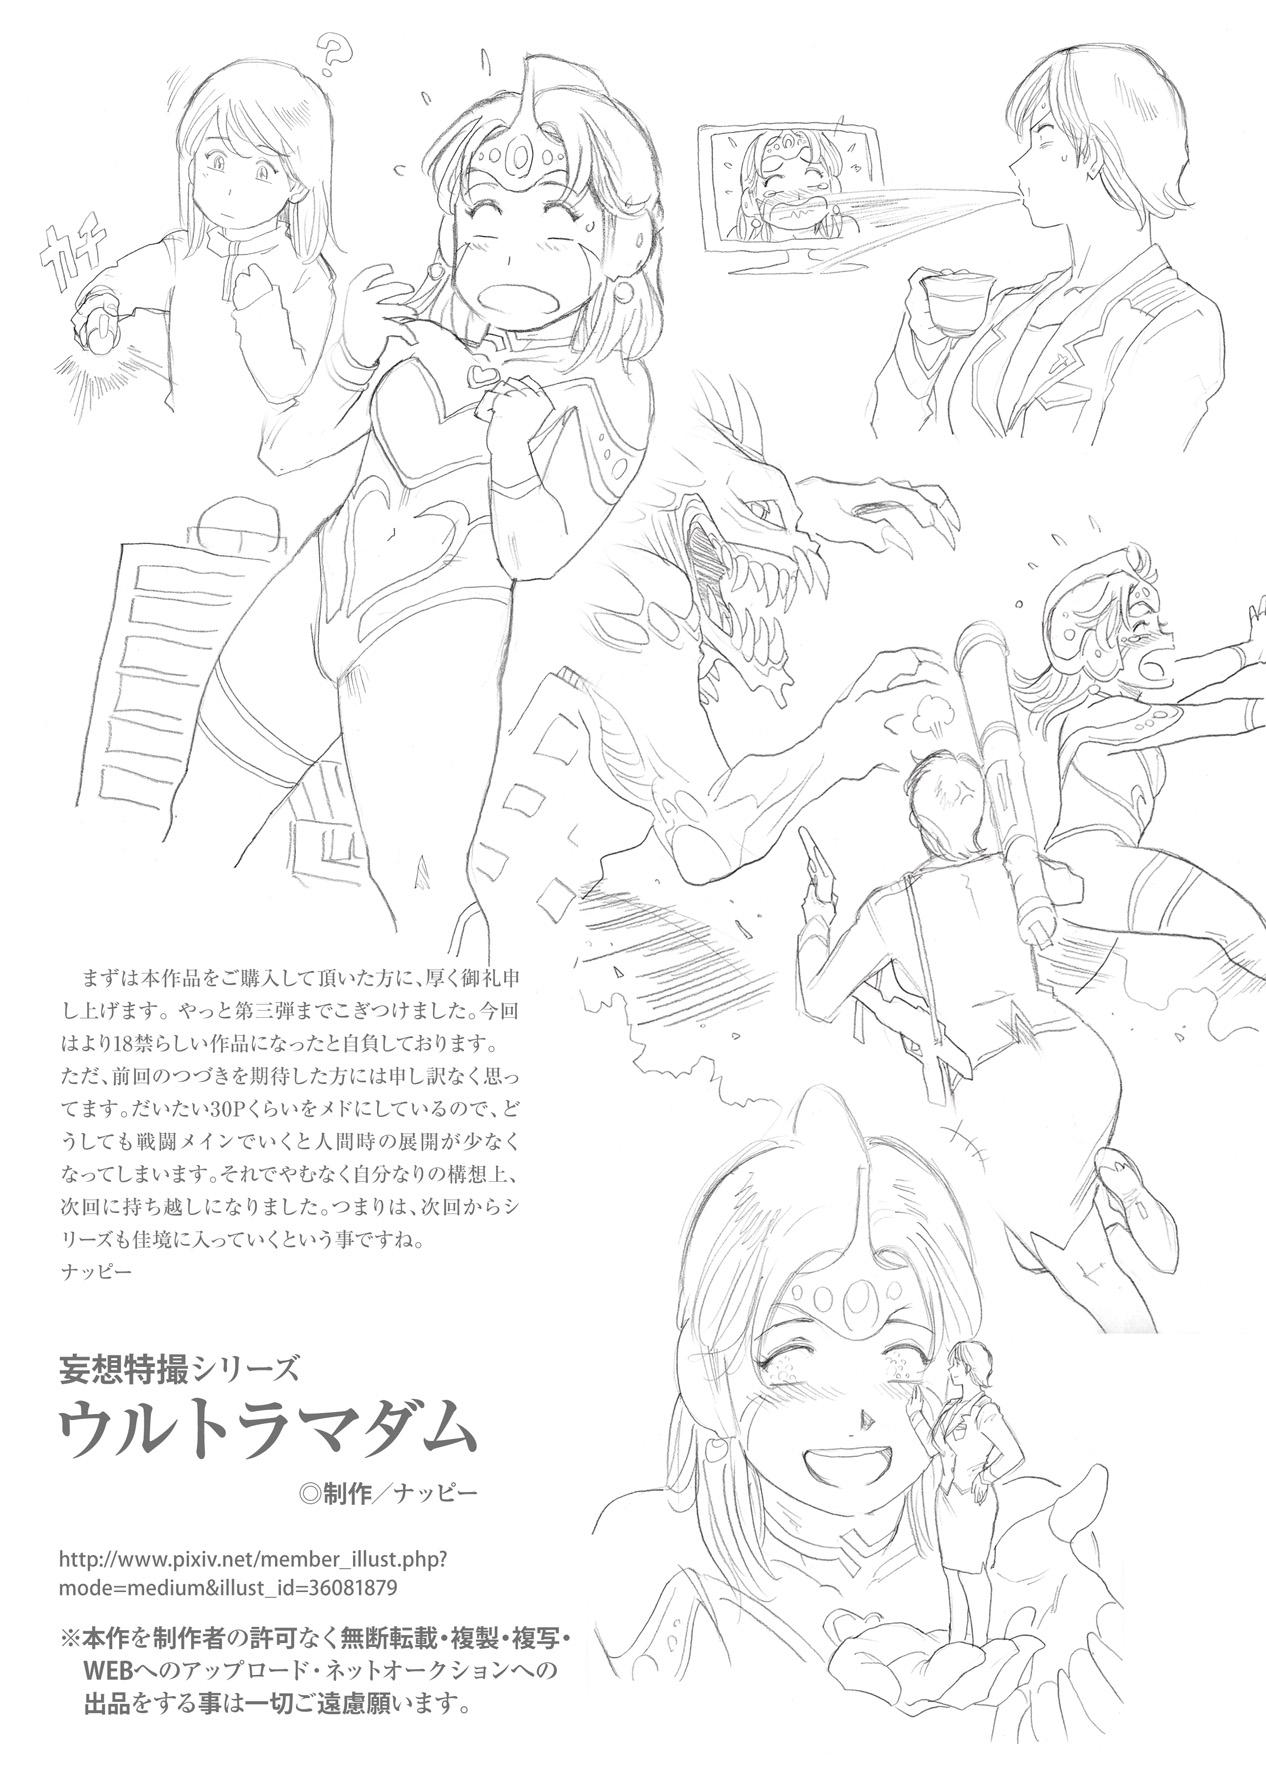 Perfect Tits Mousou Tokusatsu Series: Ultra Madam 3 - Ultraman Gordibuena - Page 38